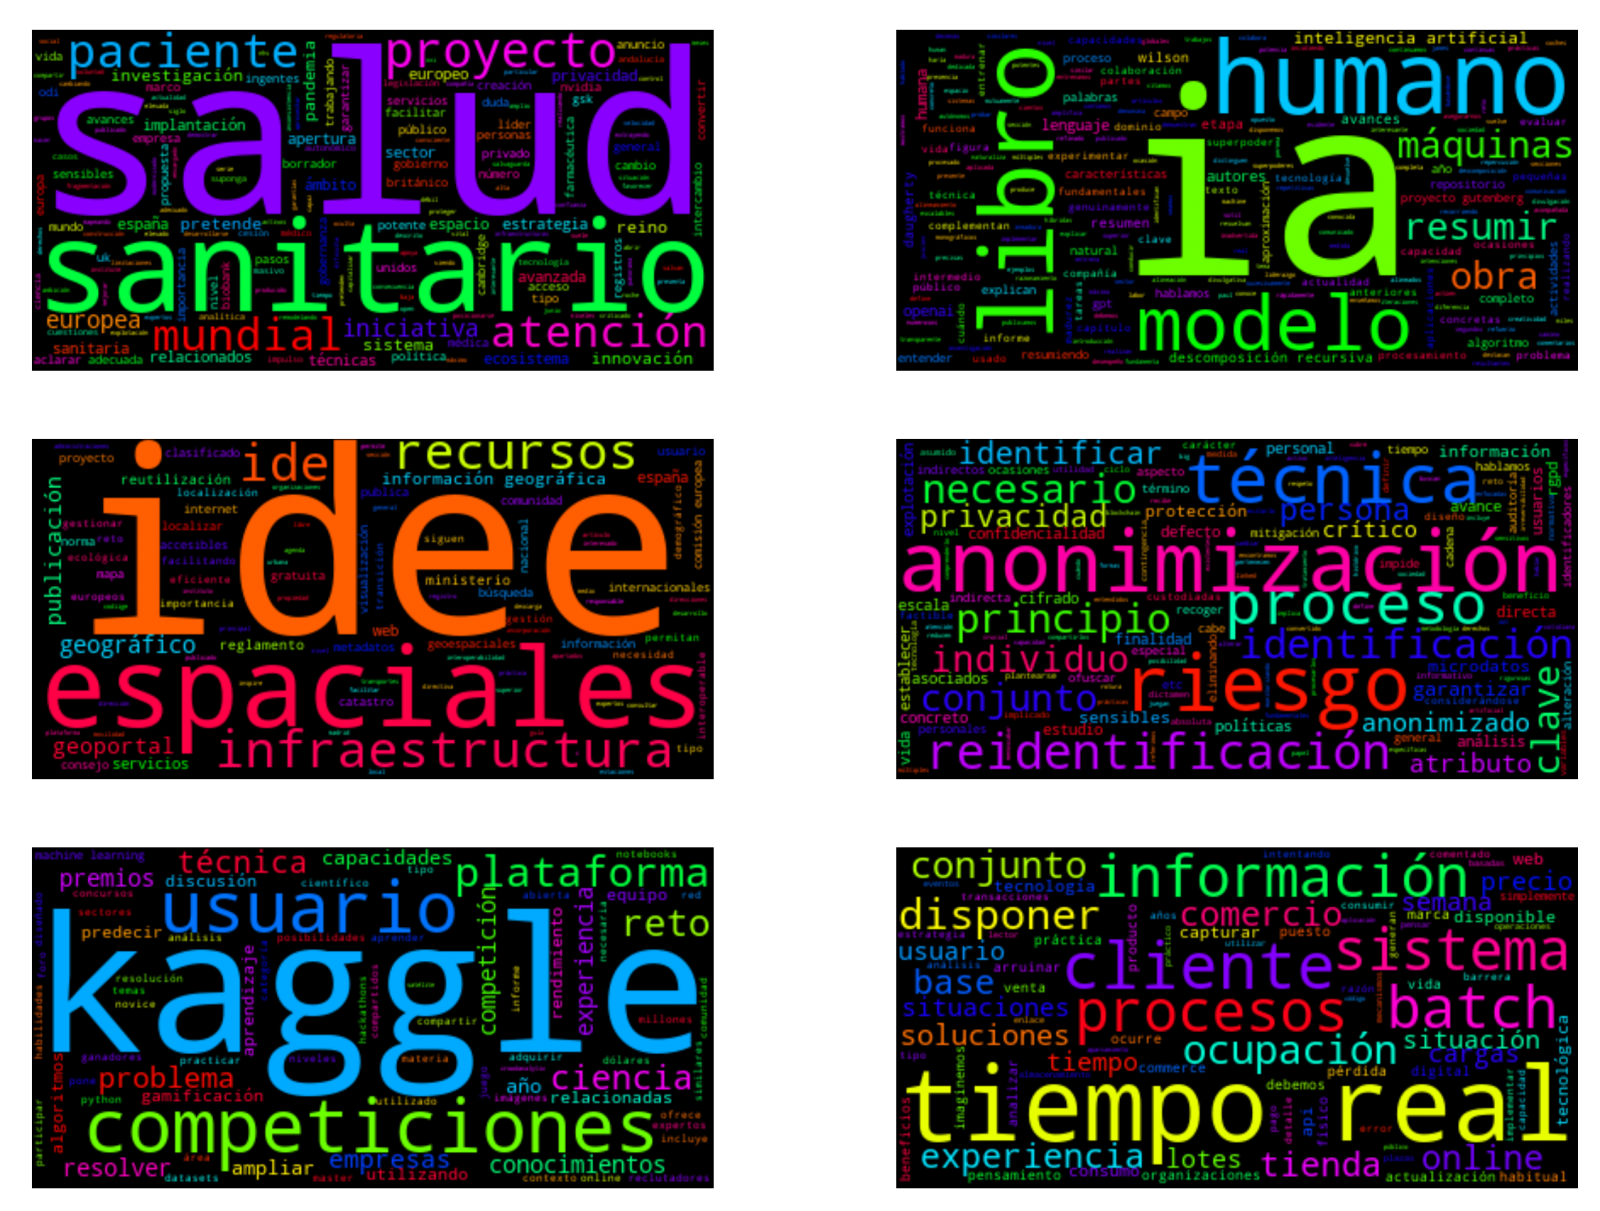 Visualización de las nubes de palabras obtenidas a partir de los textos de diferentes posts de la sección blog de datos.gob.es